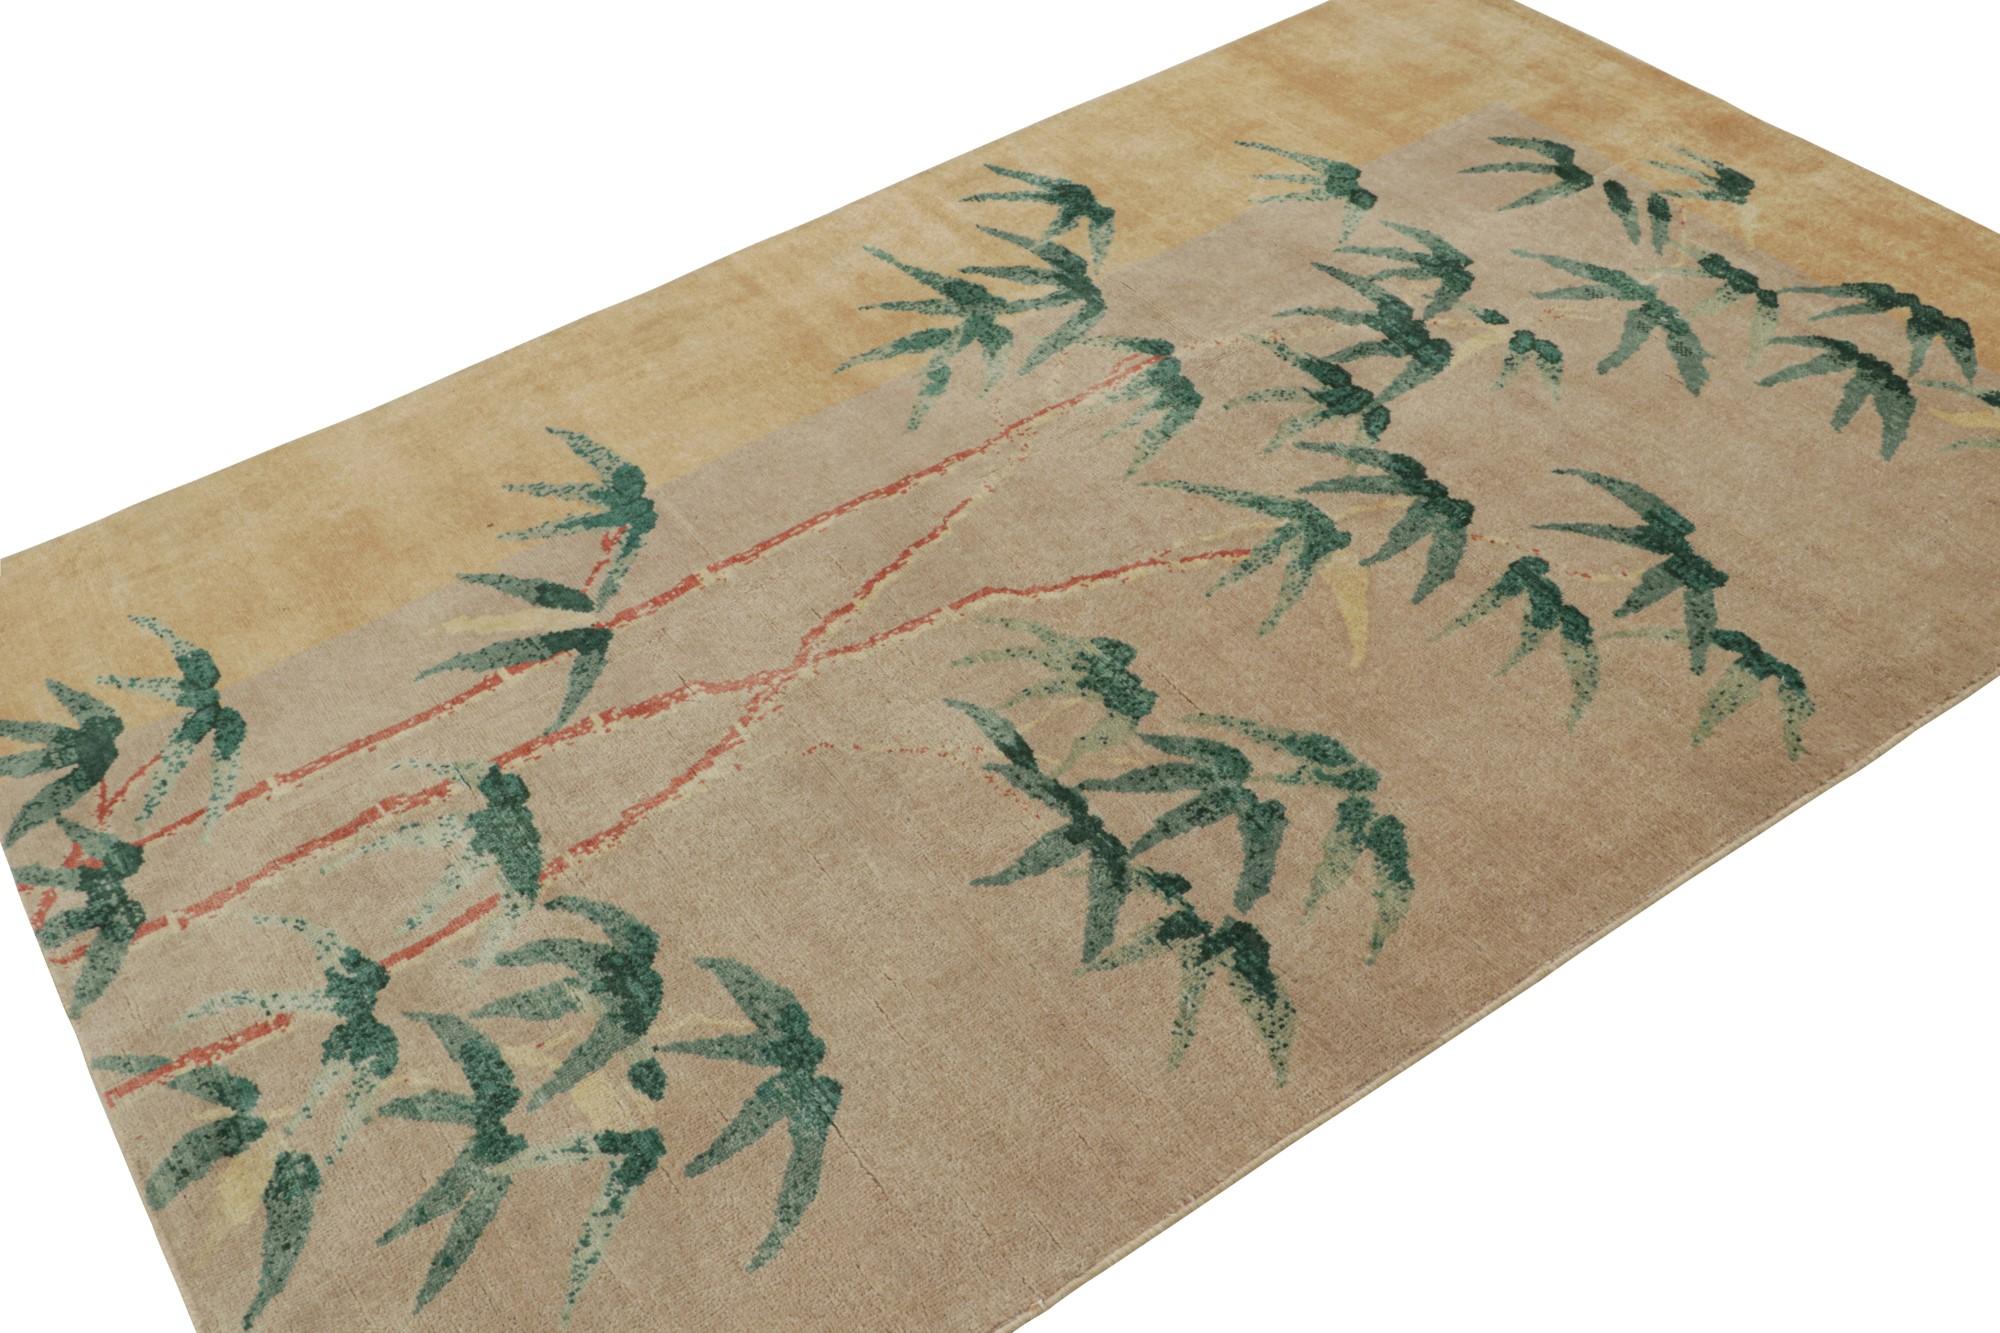 Dieser handgeknüpfte Wollteppich im Format 5x8 ist vom chinesischen Deko-Stil inspiriert. Mit seinen floralen Mustern, die Bambusbäume darstellen, ist dieses Stück ein Sammlerstück aus der Zeit. 

Über das Design:  

Dieser handgeknüpfte Wollteppich